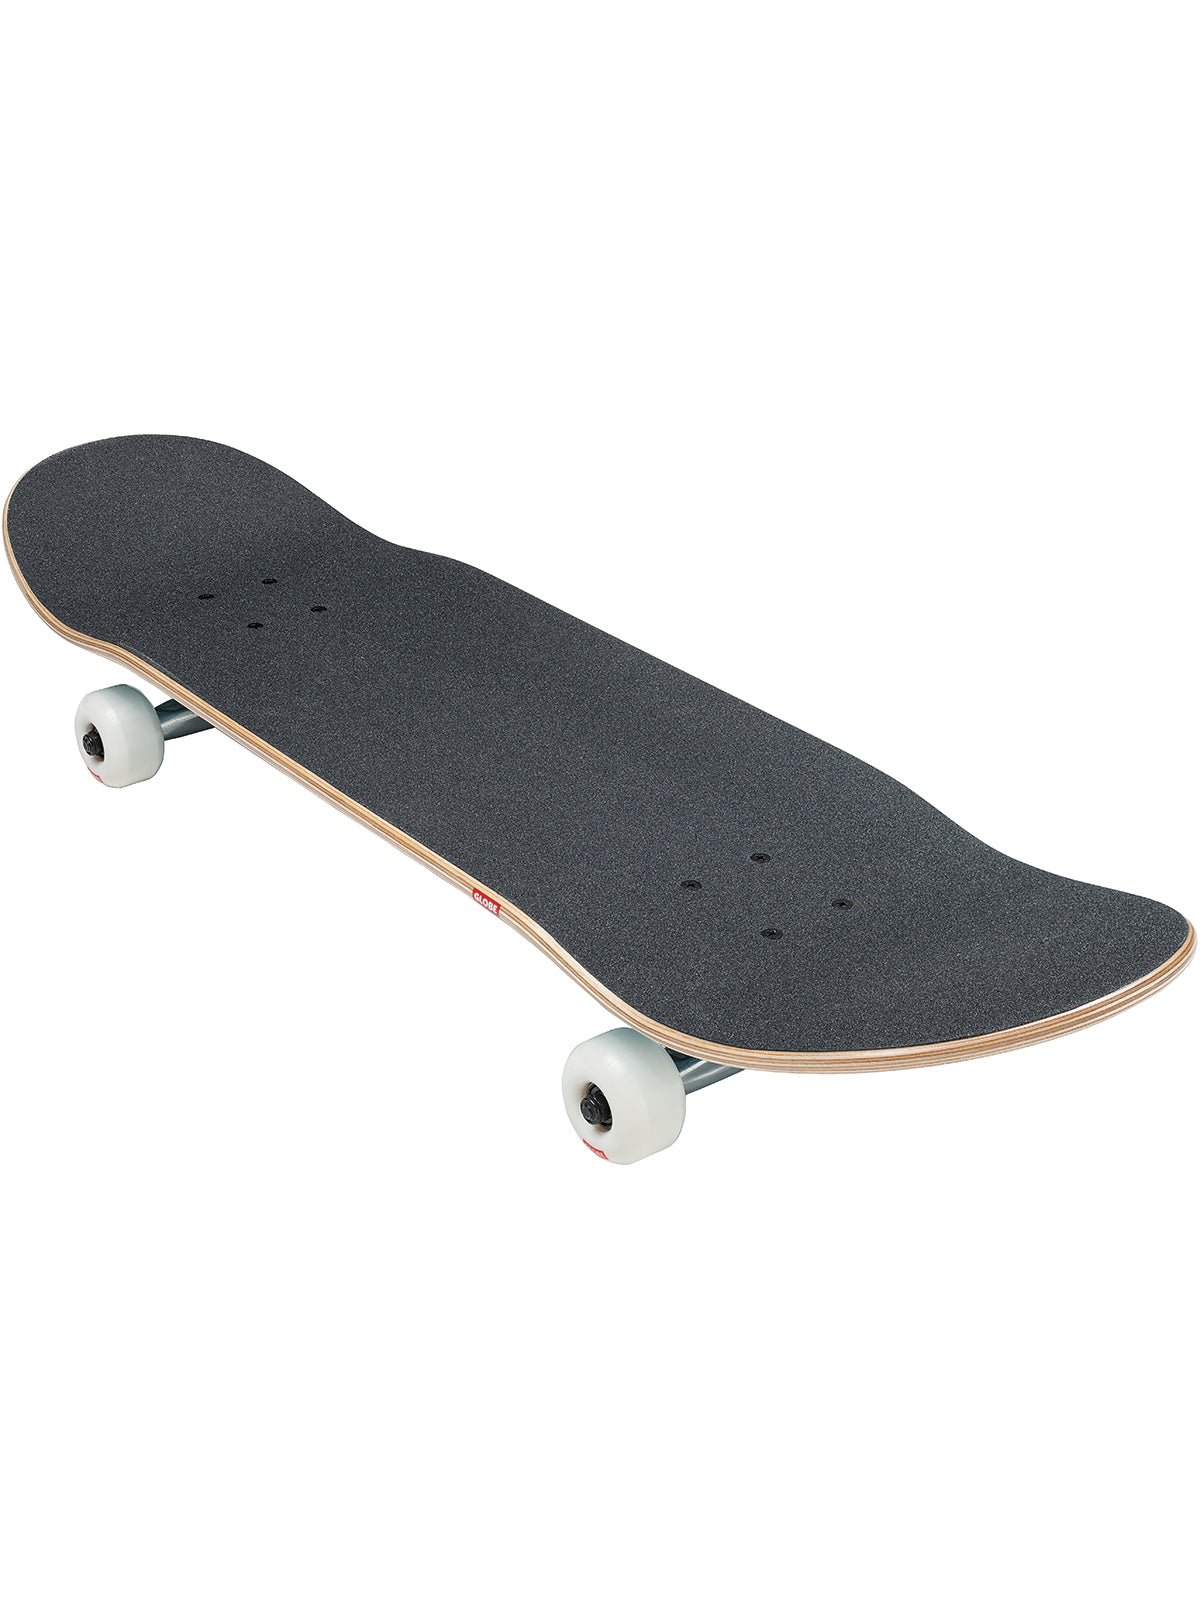 goodstock steel blue 8.75" complete skateboard